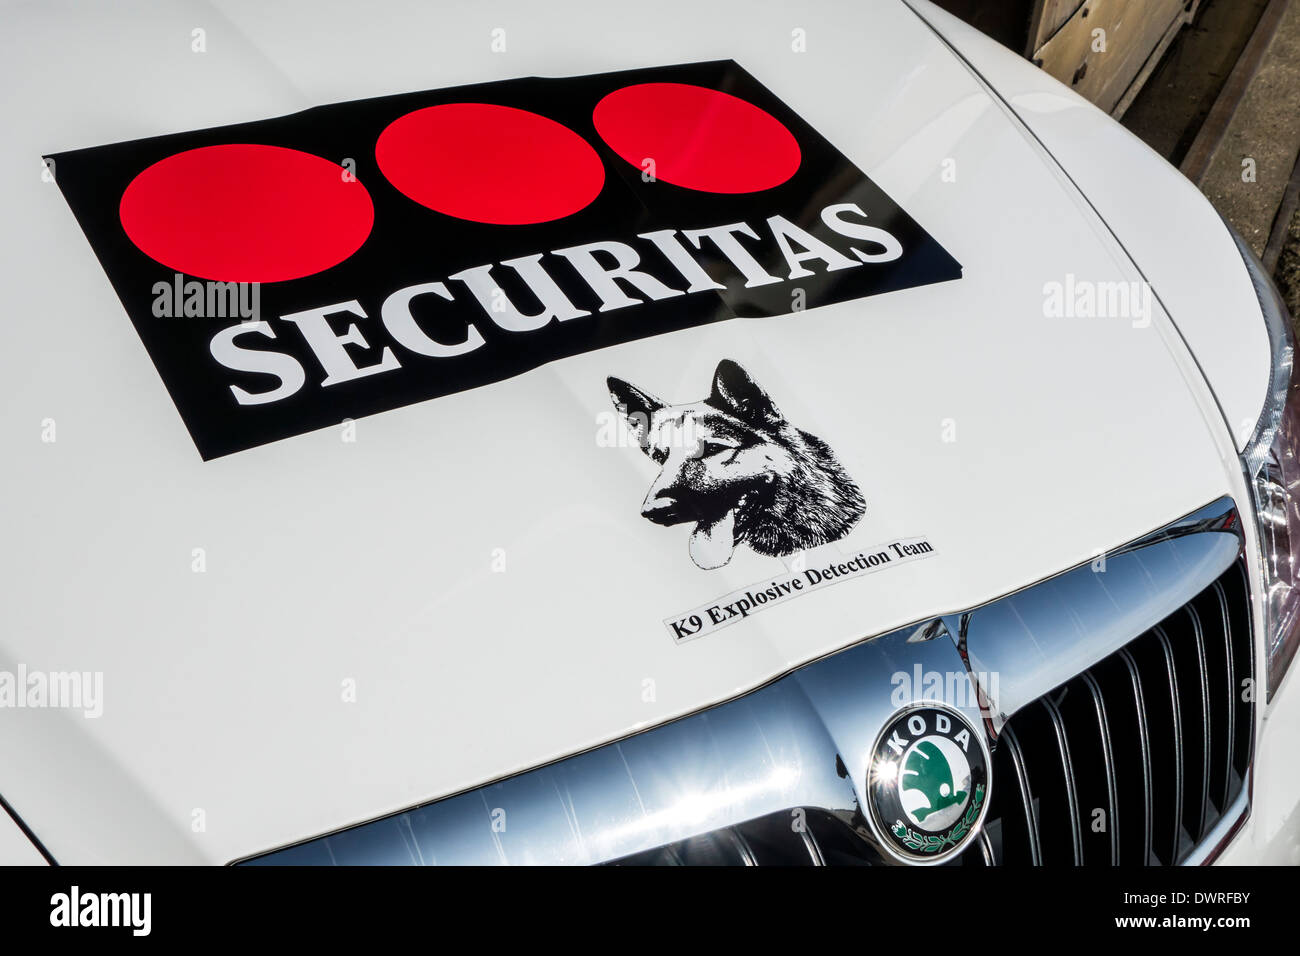 Voiture avec le logo de Securitas K9 de l'équipe de détection des explosifs qui travaillent avec des chiens détecteurs d'explosifs, la recherche d'explosifs et de stupéfiants Banque D'Images